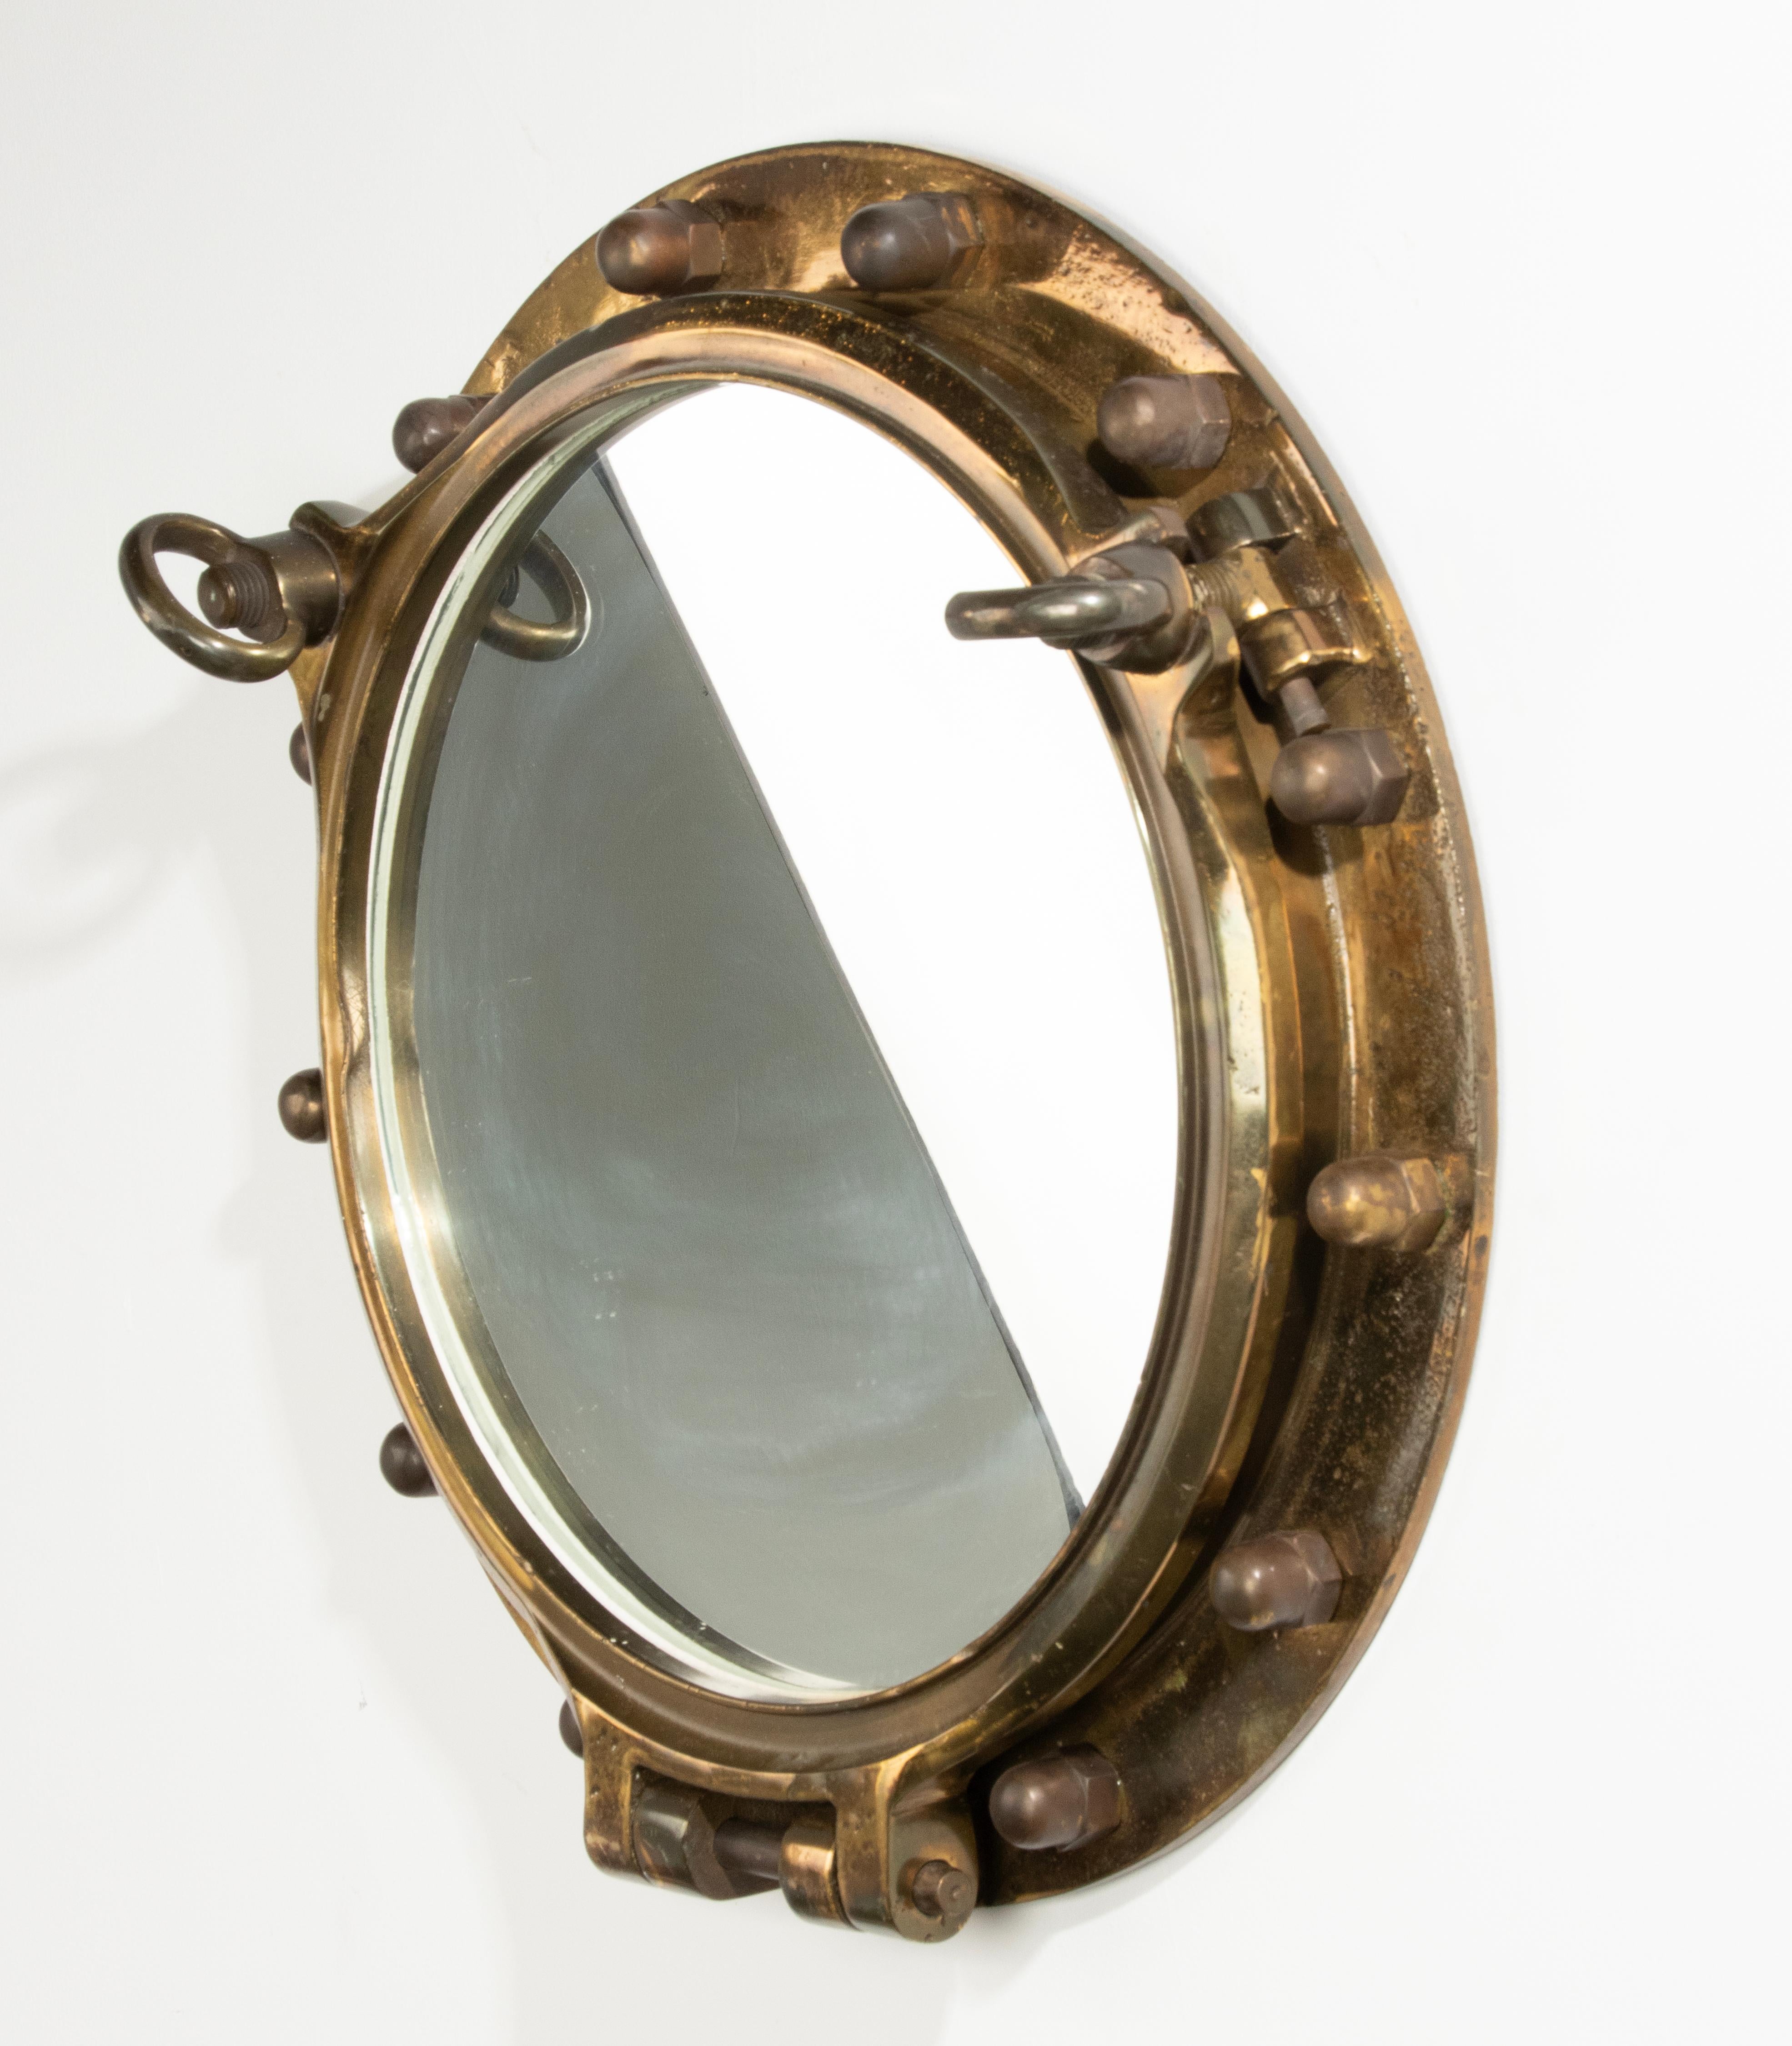 Ein antiker, schwerer und großer Bullaugen-Wandspiegel aus Messing. Im Inneren ist ein Spiegelglas angebracht. Das Ganze hat eine schöne alte Patina. Das Originalglas wird entfernt und durch ein Spiegelglas ersetzt. Einige Verschleiß und kleine